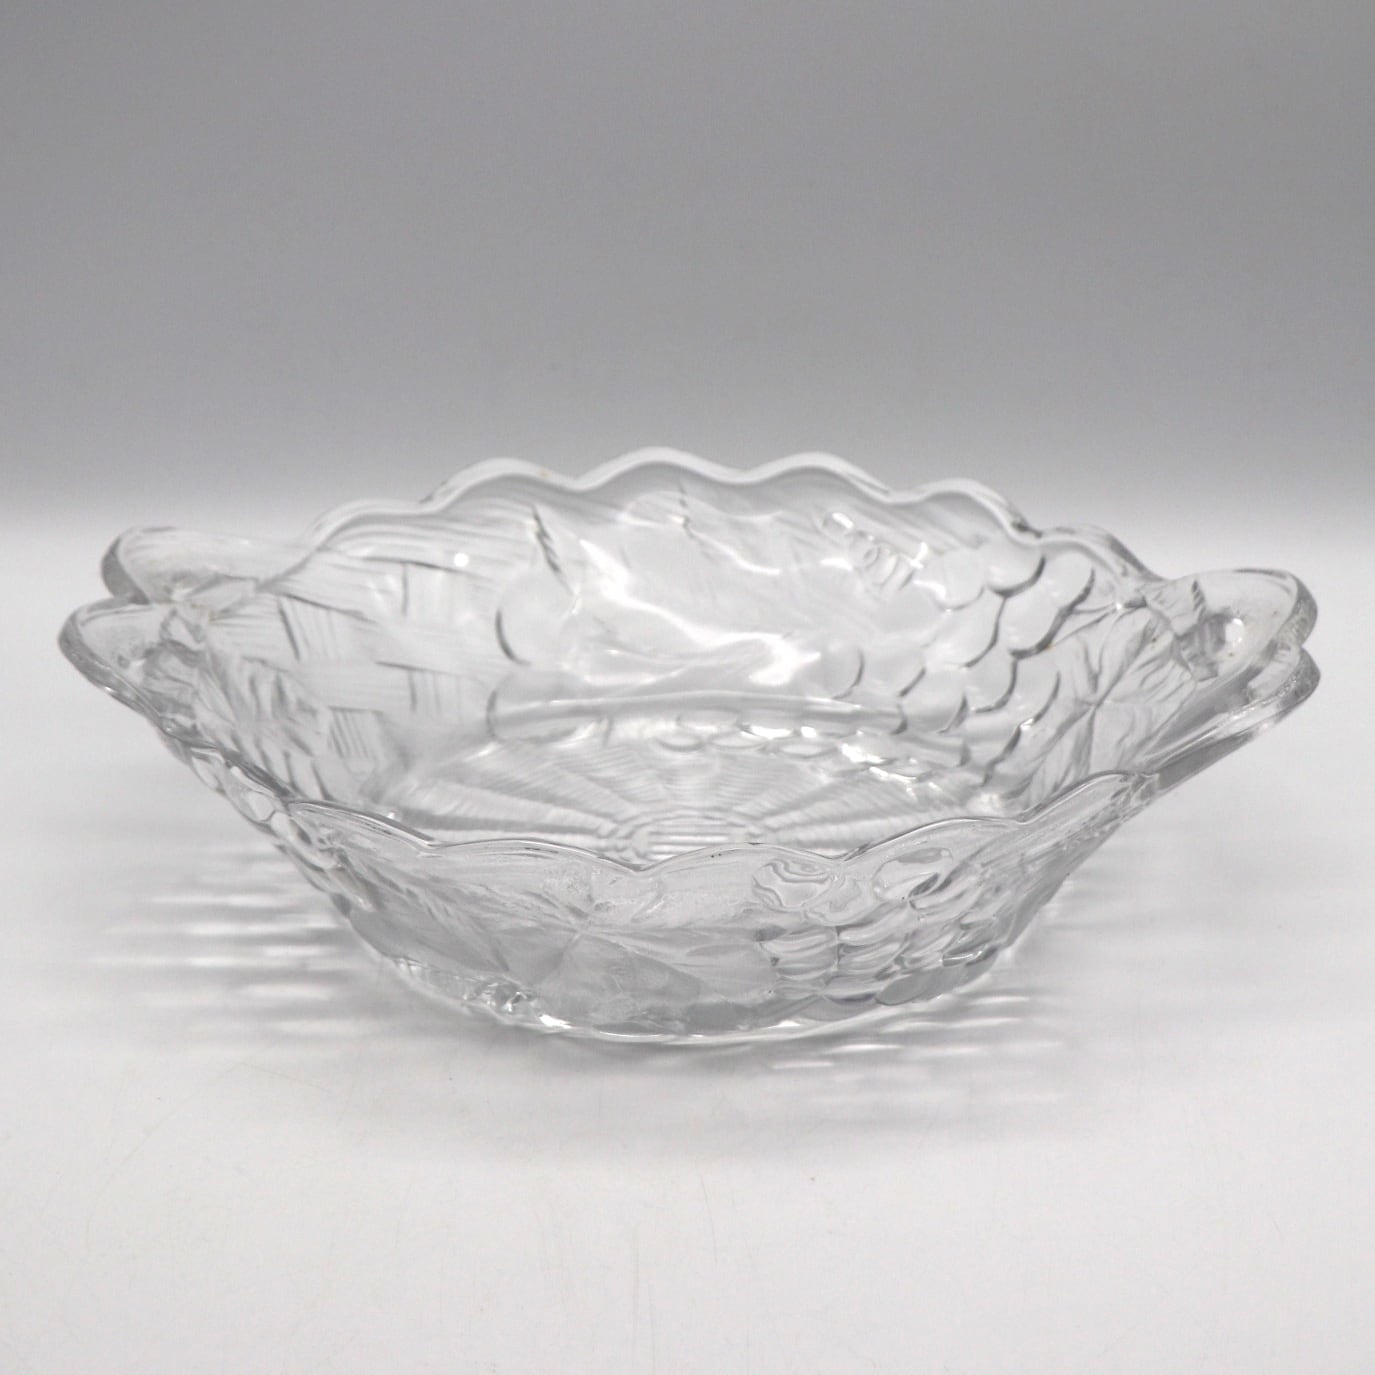 SOGA・曽我ガラス・ガラス食器・フルーツ皿・盛皿・No.210329-31・梱包サイズ80 リサイクルショップ宝さがし